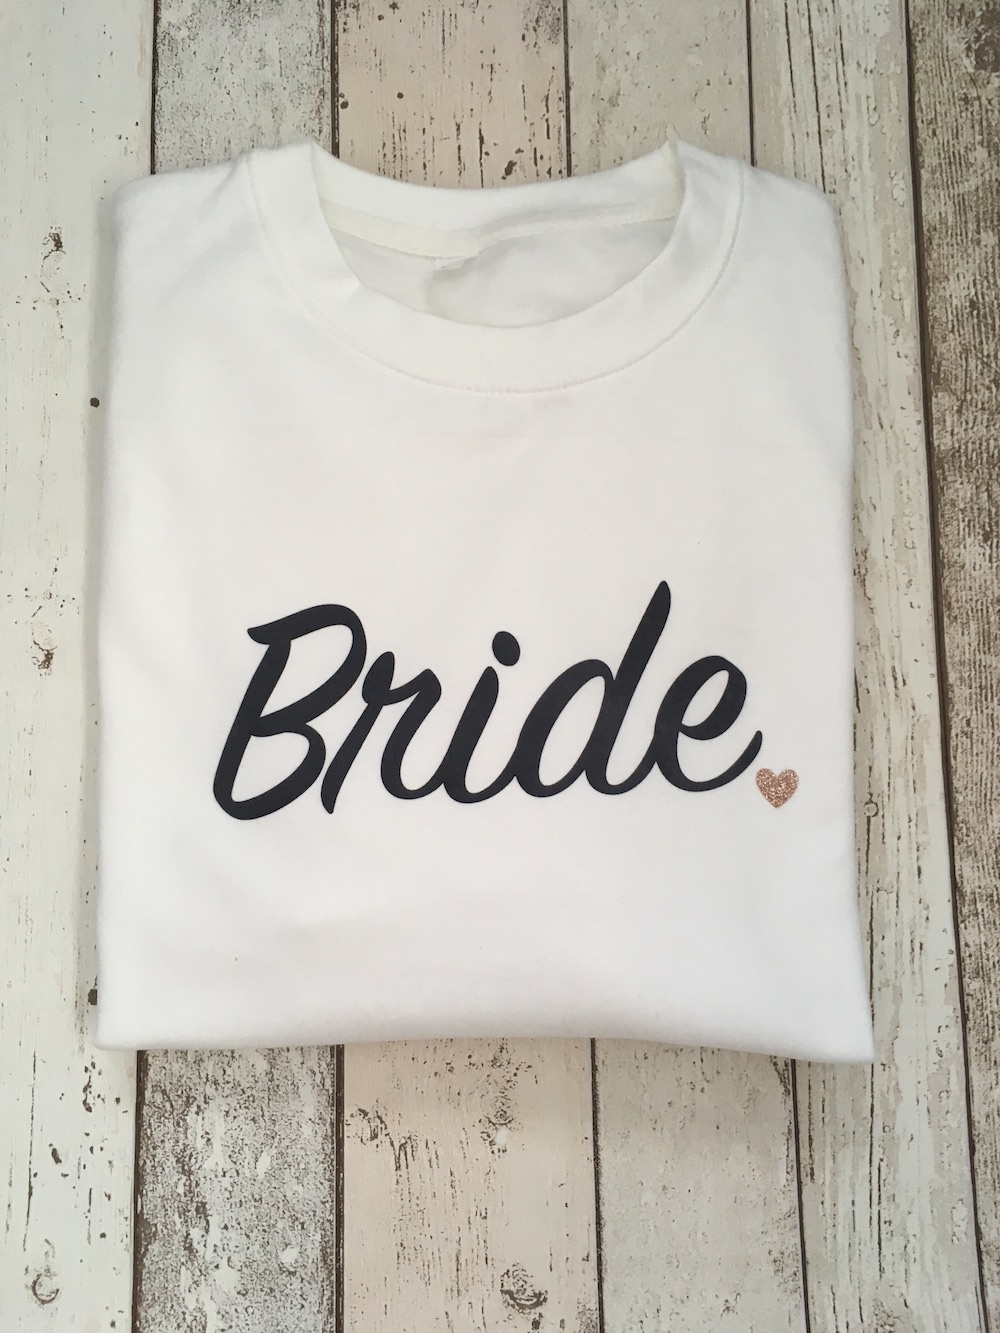 Bride Sweatshirt – White